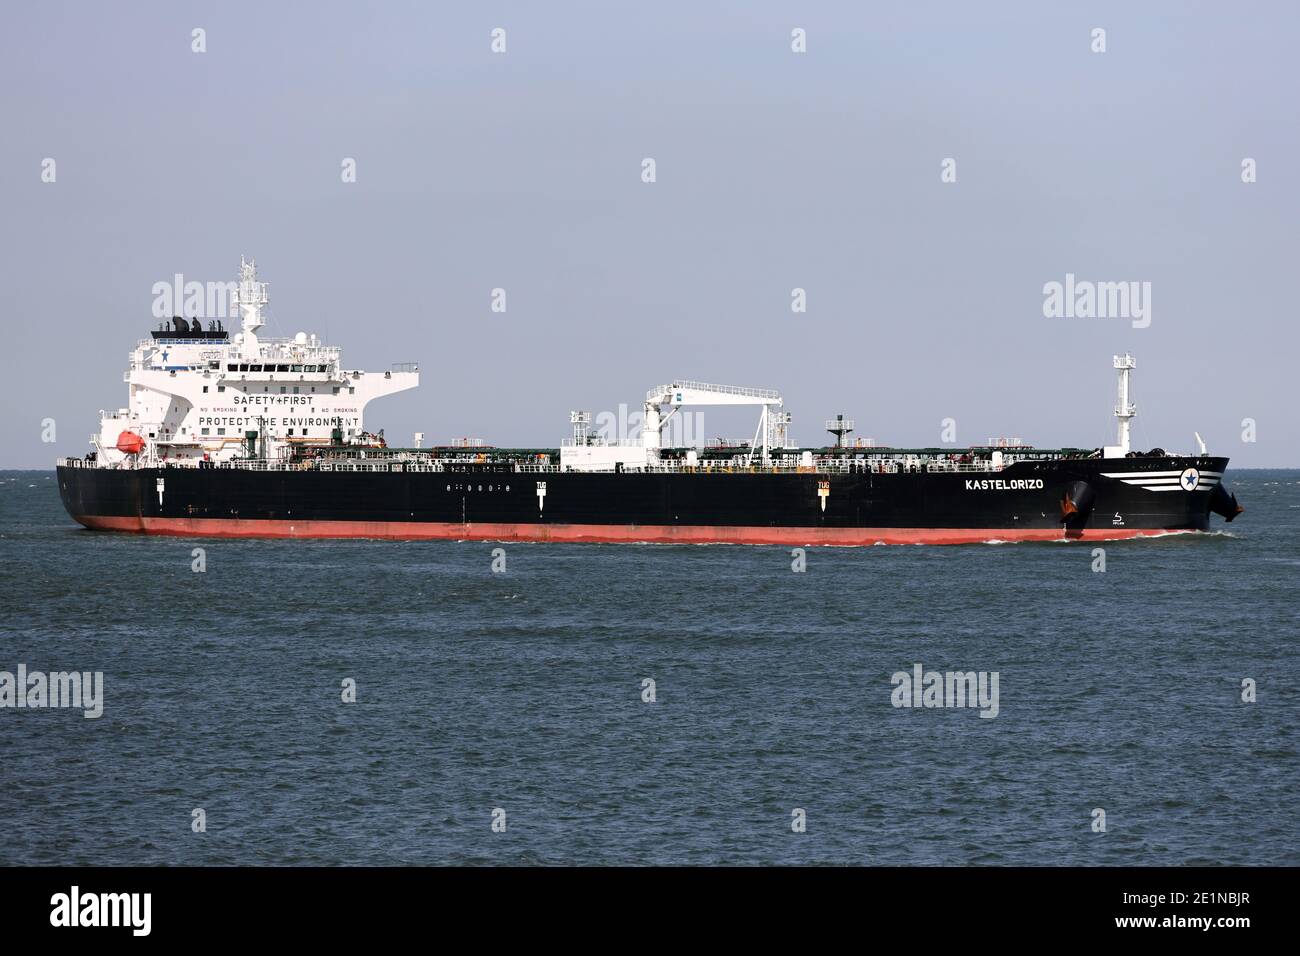 Le pétrolier Kasteloriza atteindra le port de Rotterdam le 18 septembre 2020. Banque D'Images